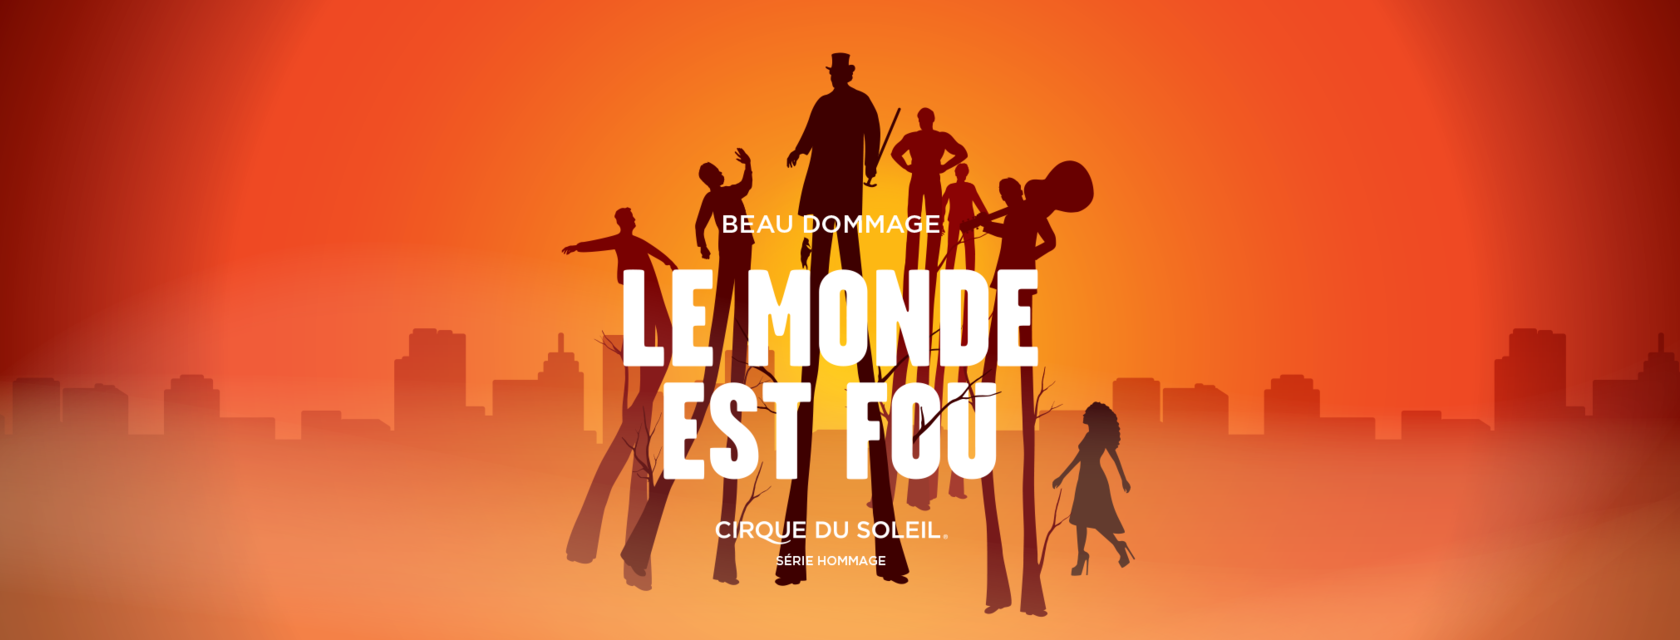 The Corporation de l’Amphithéâtre de Trois-Rivières unveils its first show of the tribute series: Le Monde est Fou, created by Cirque du Soleil